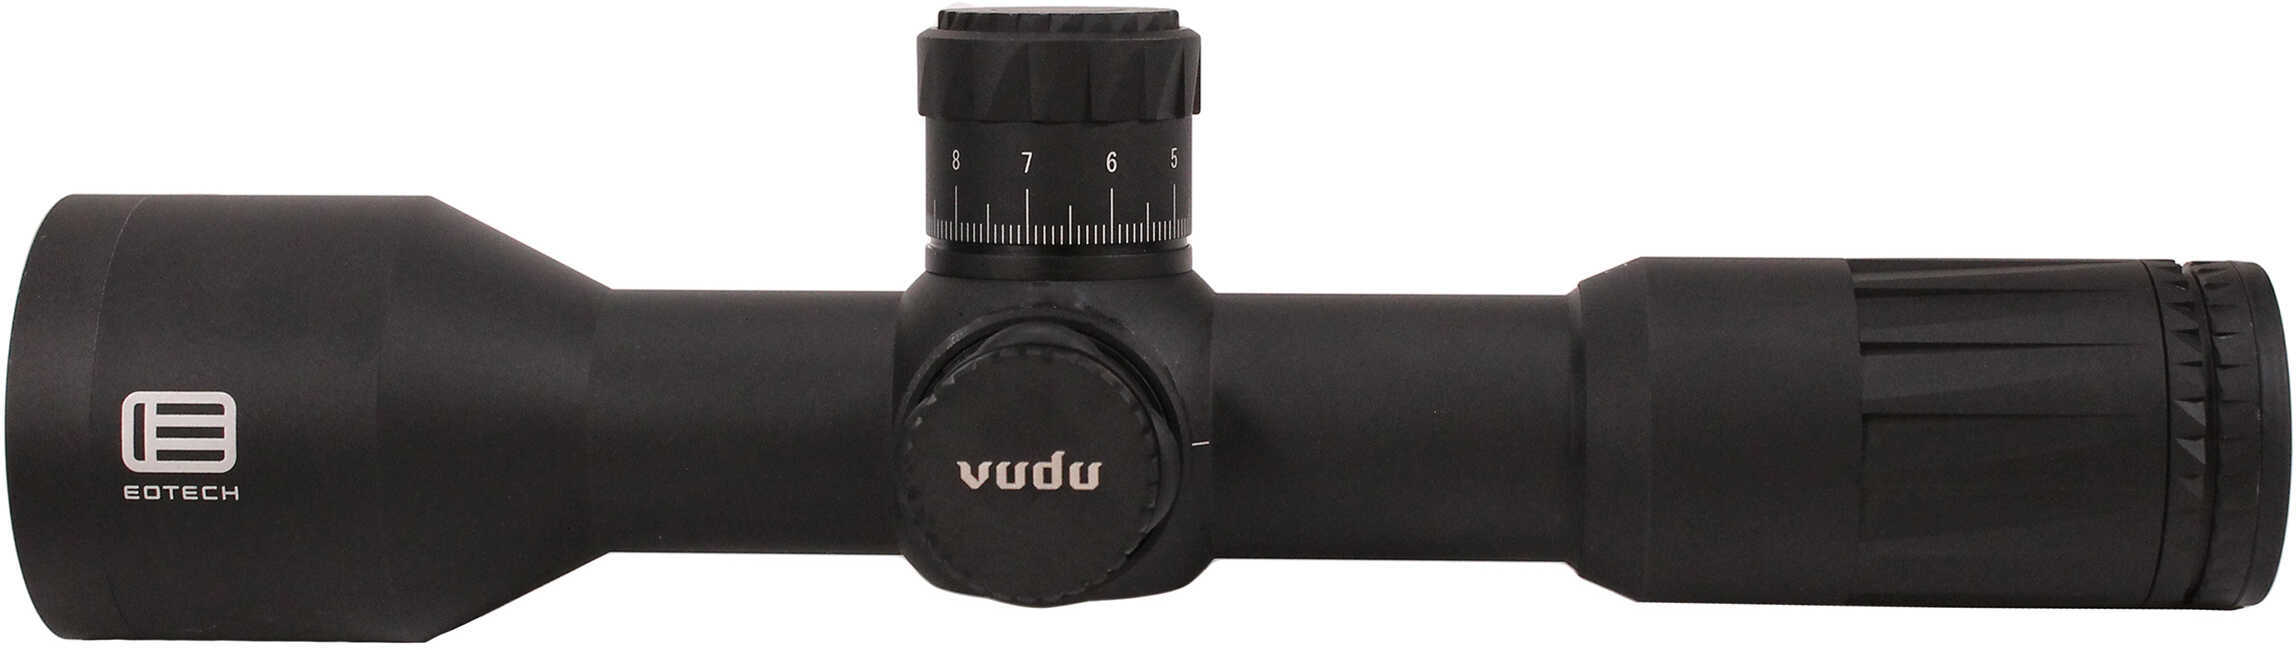 EOTECH VUDU 5-25X50 Ff Riflescope H59 RET